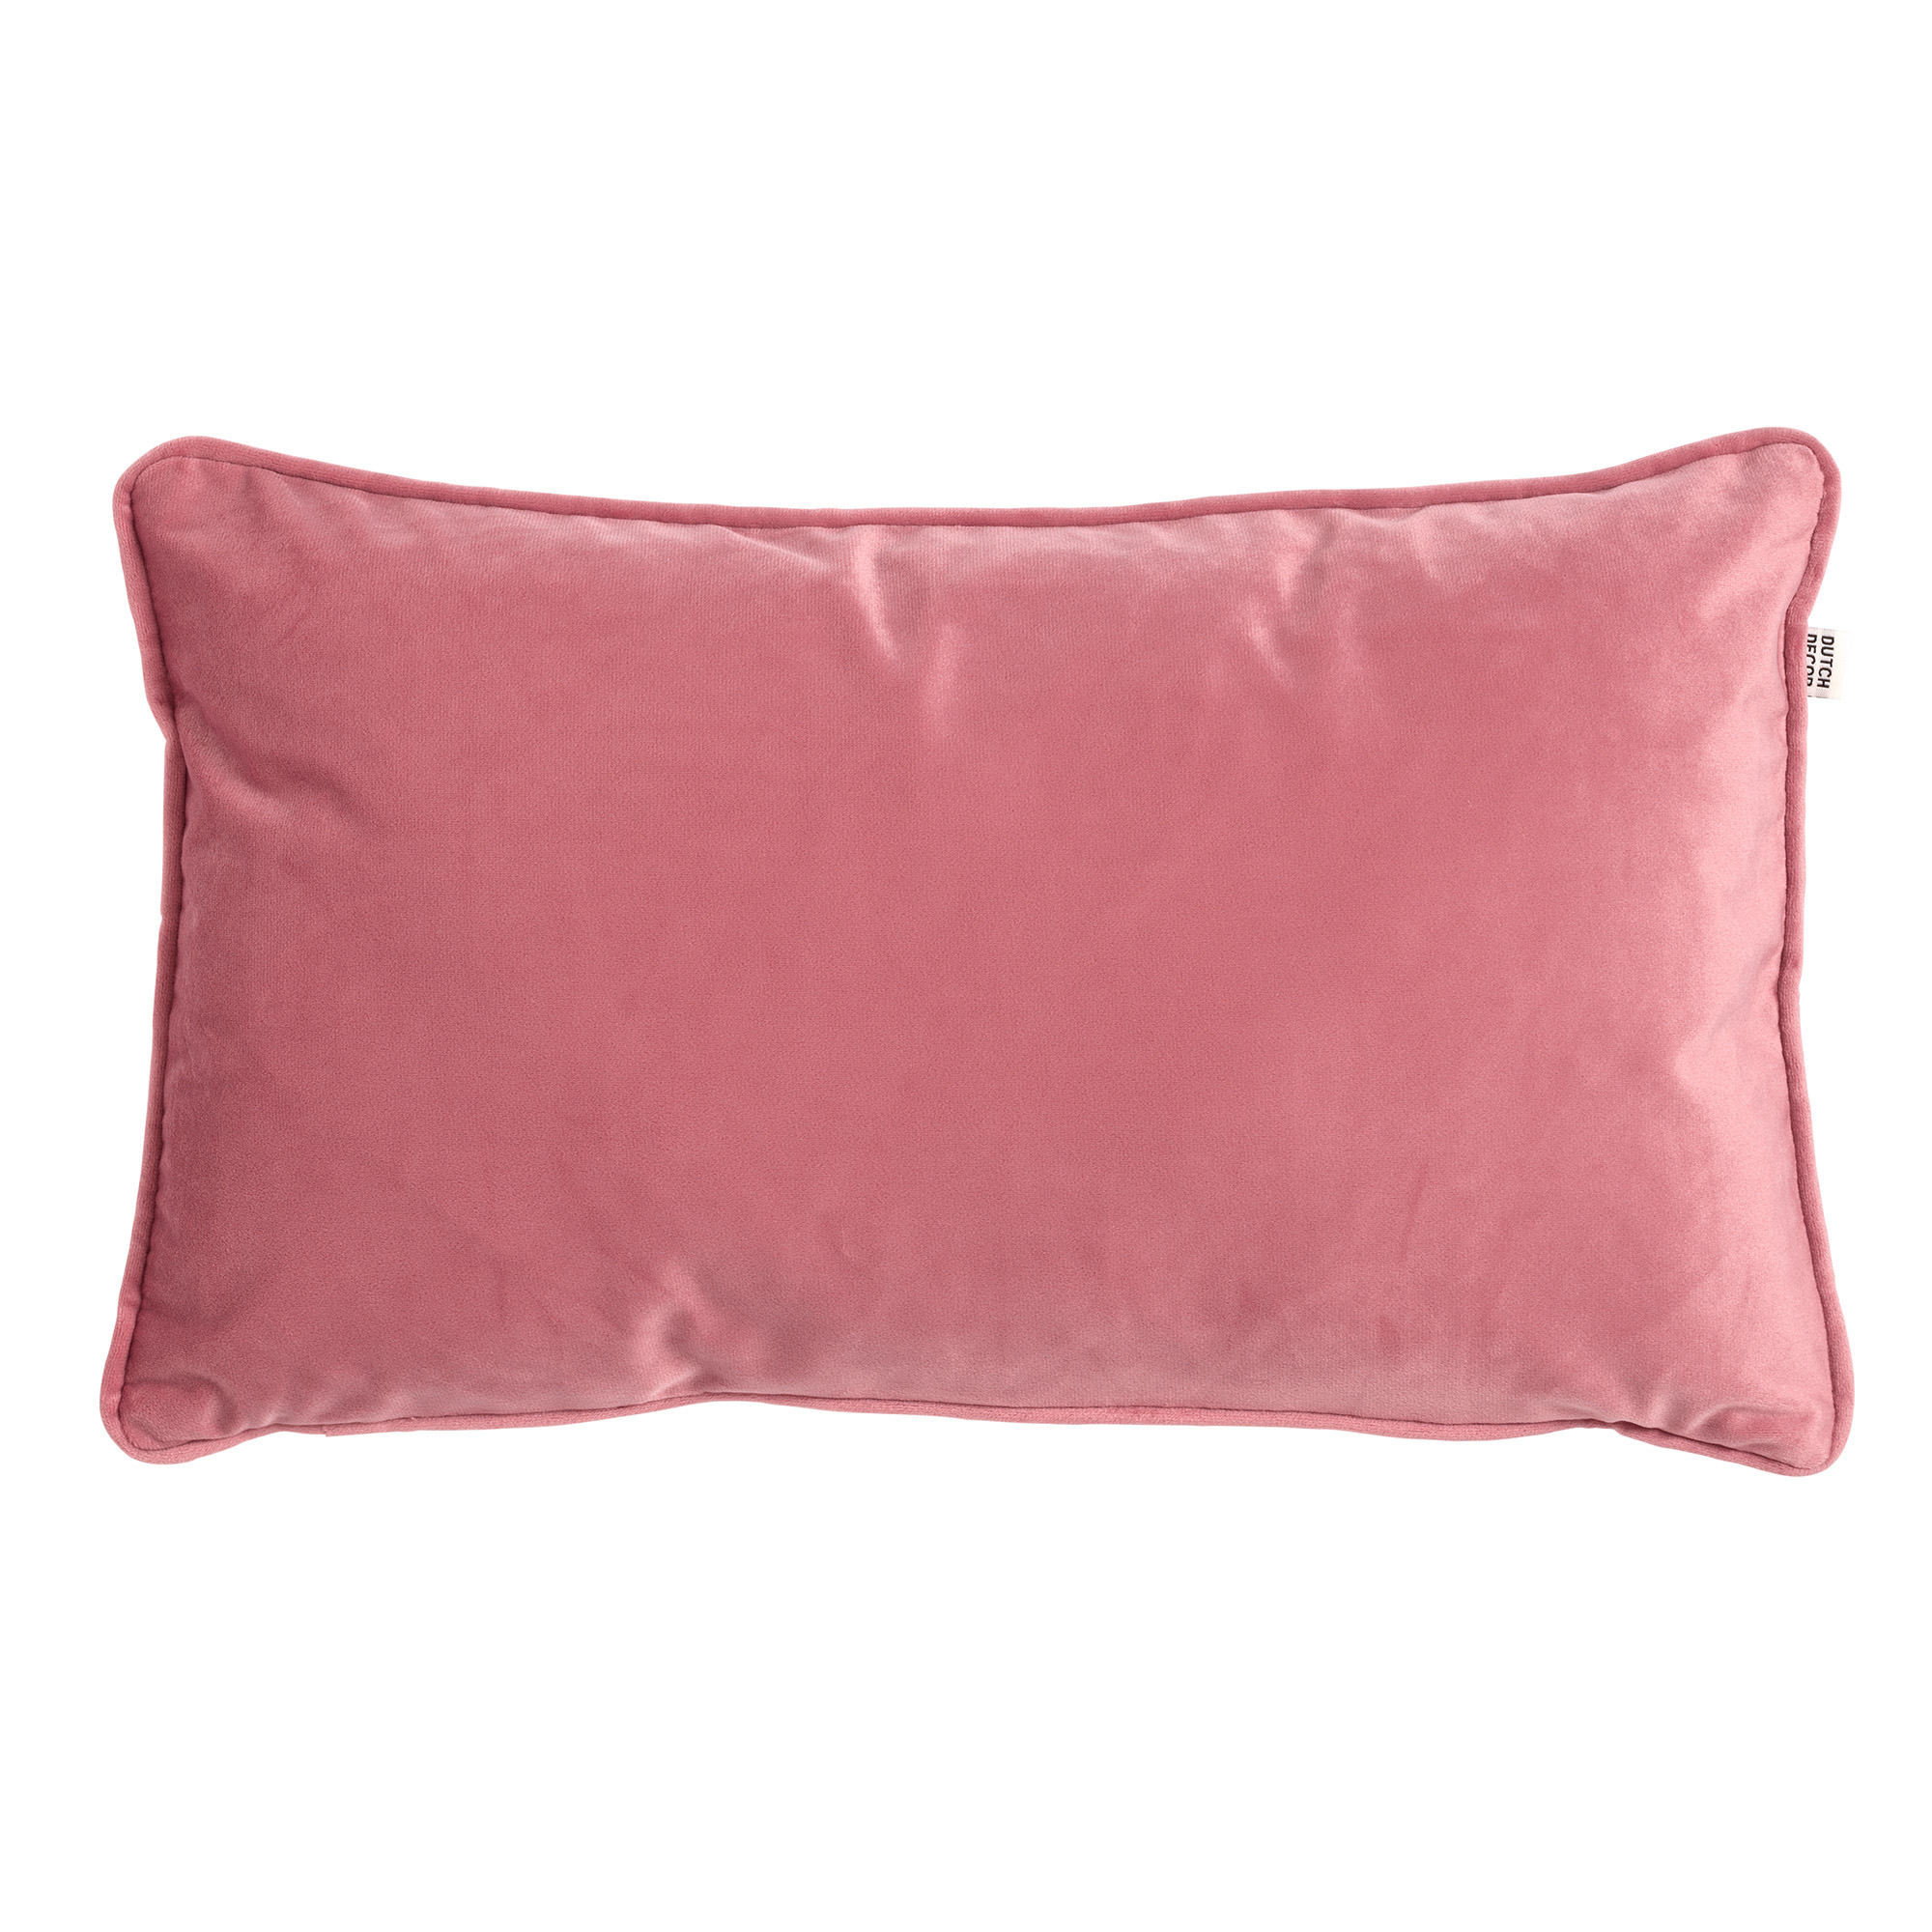 FINN - Sierkussen 30x50 cm - velvet - lendekussen - Dusty Rose - roze